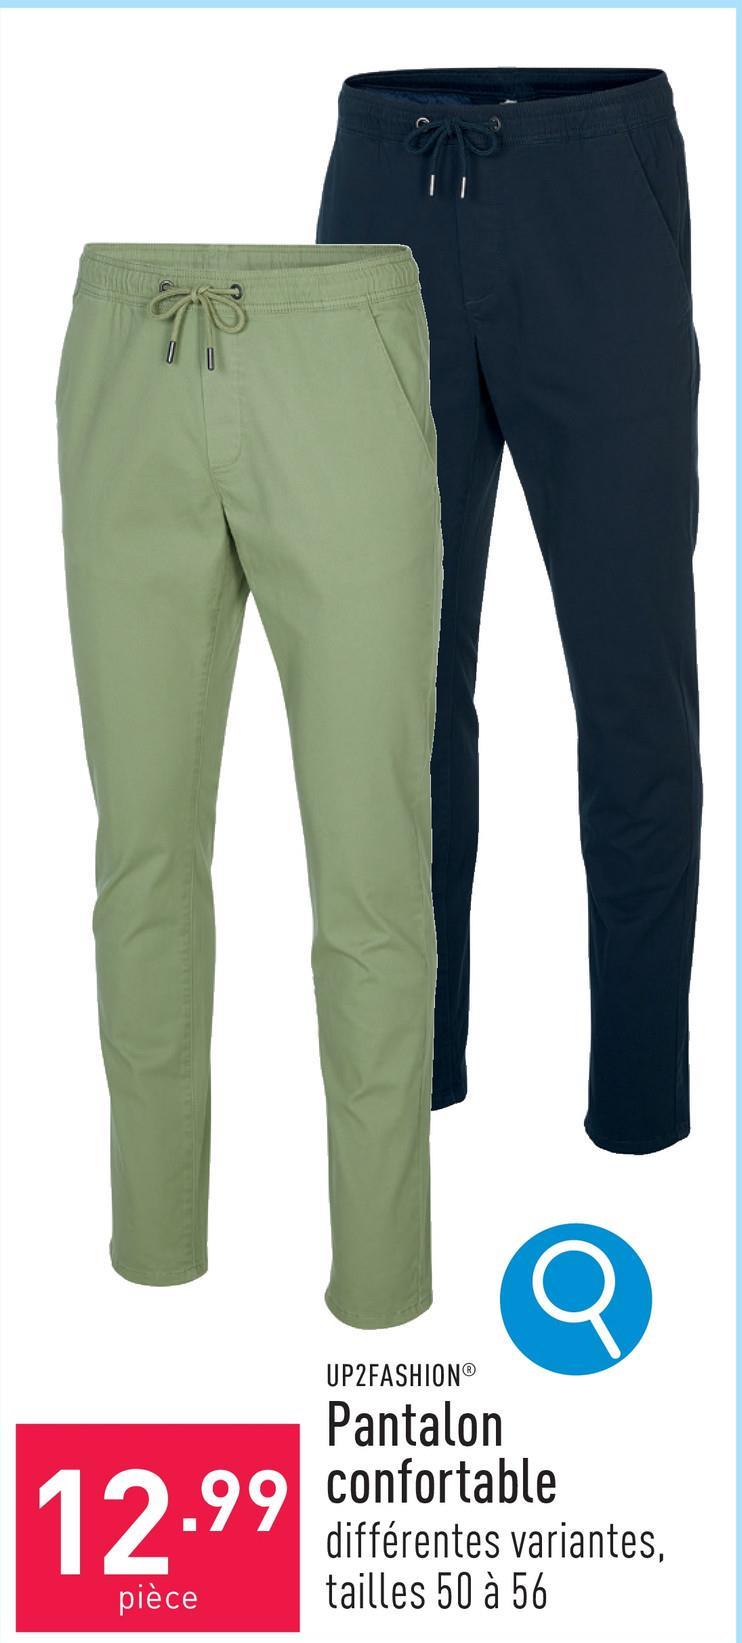 Pantalon confortable coton/élasthanne (Lycra®), tapered fit, choix entre différentes variantes, tailles 50 à 56, certifié OEKO-TEX®